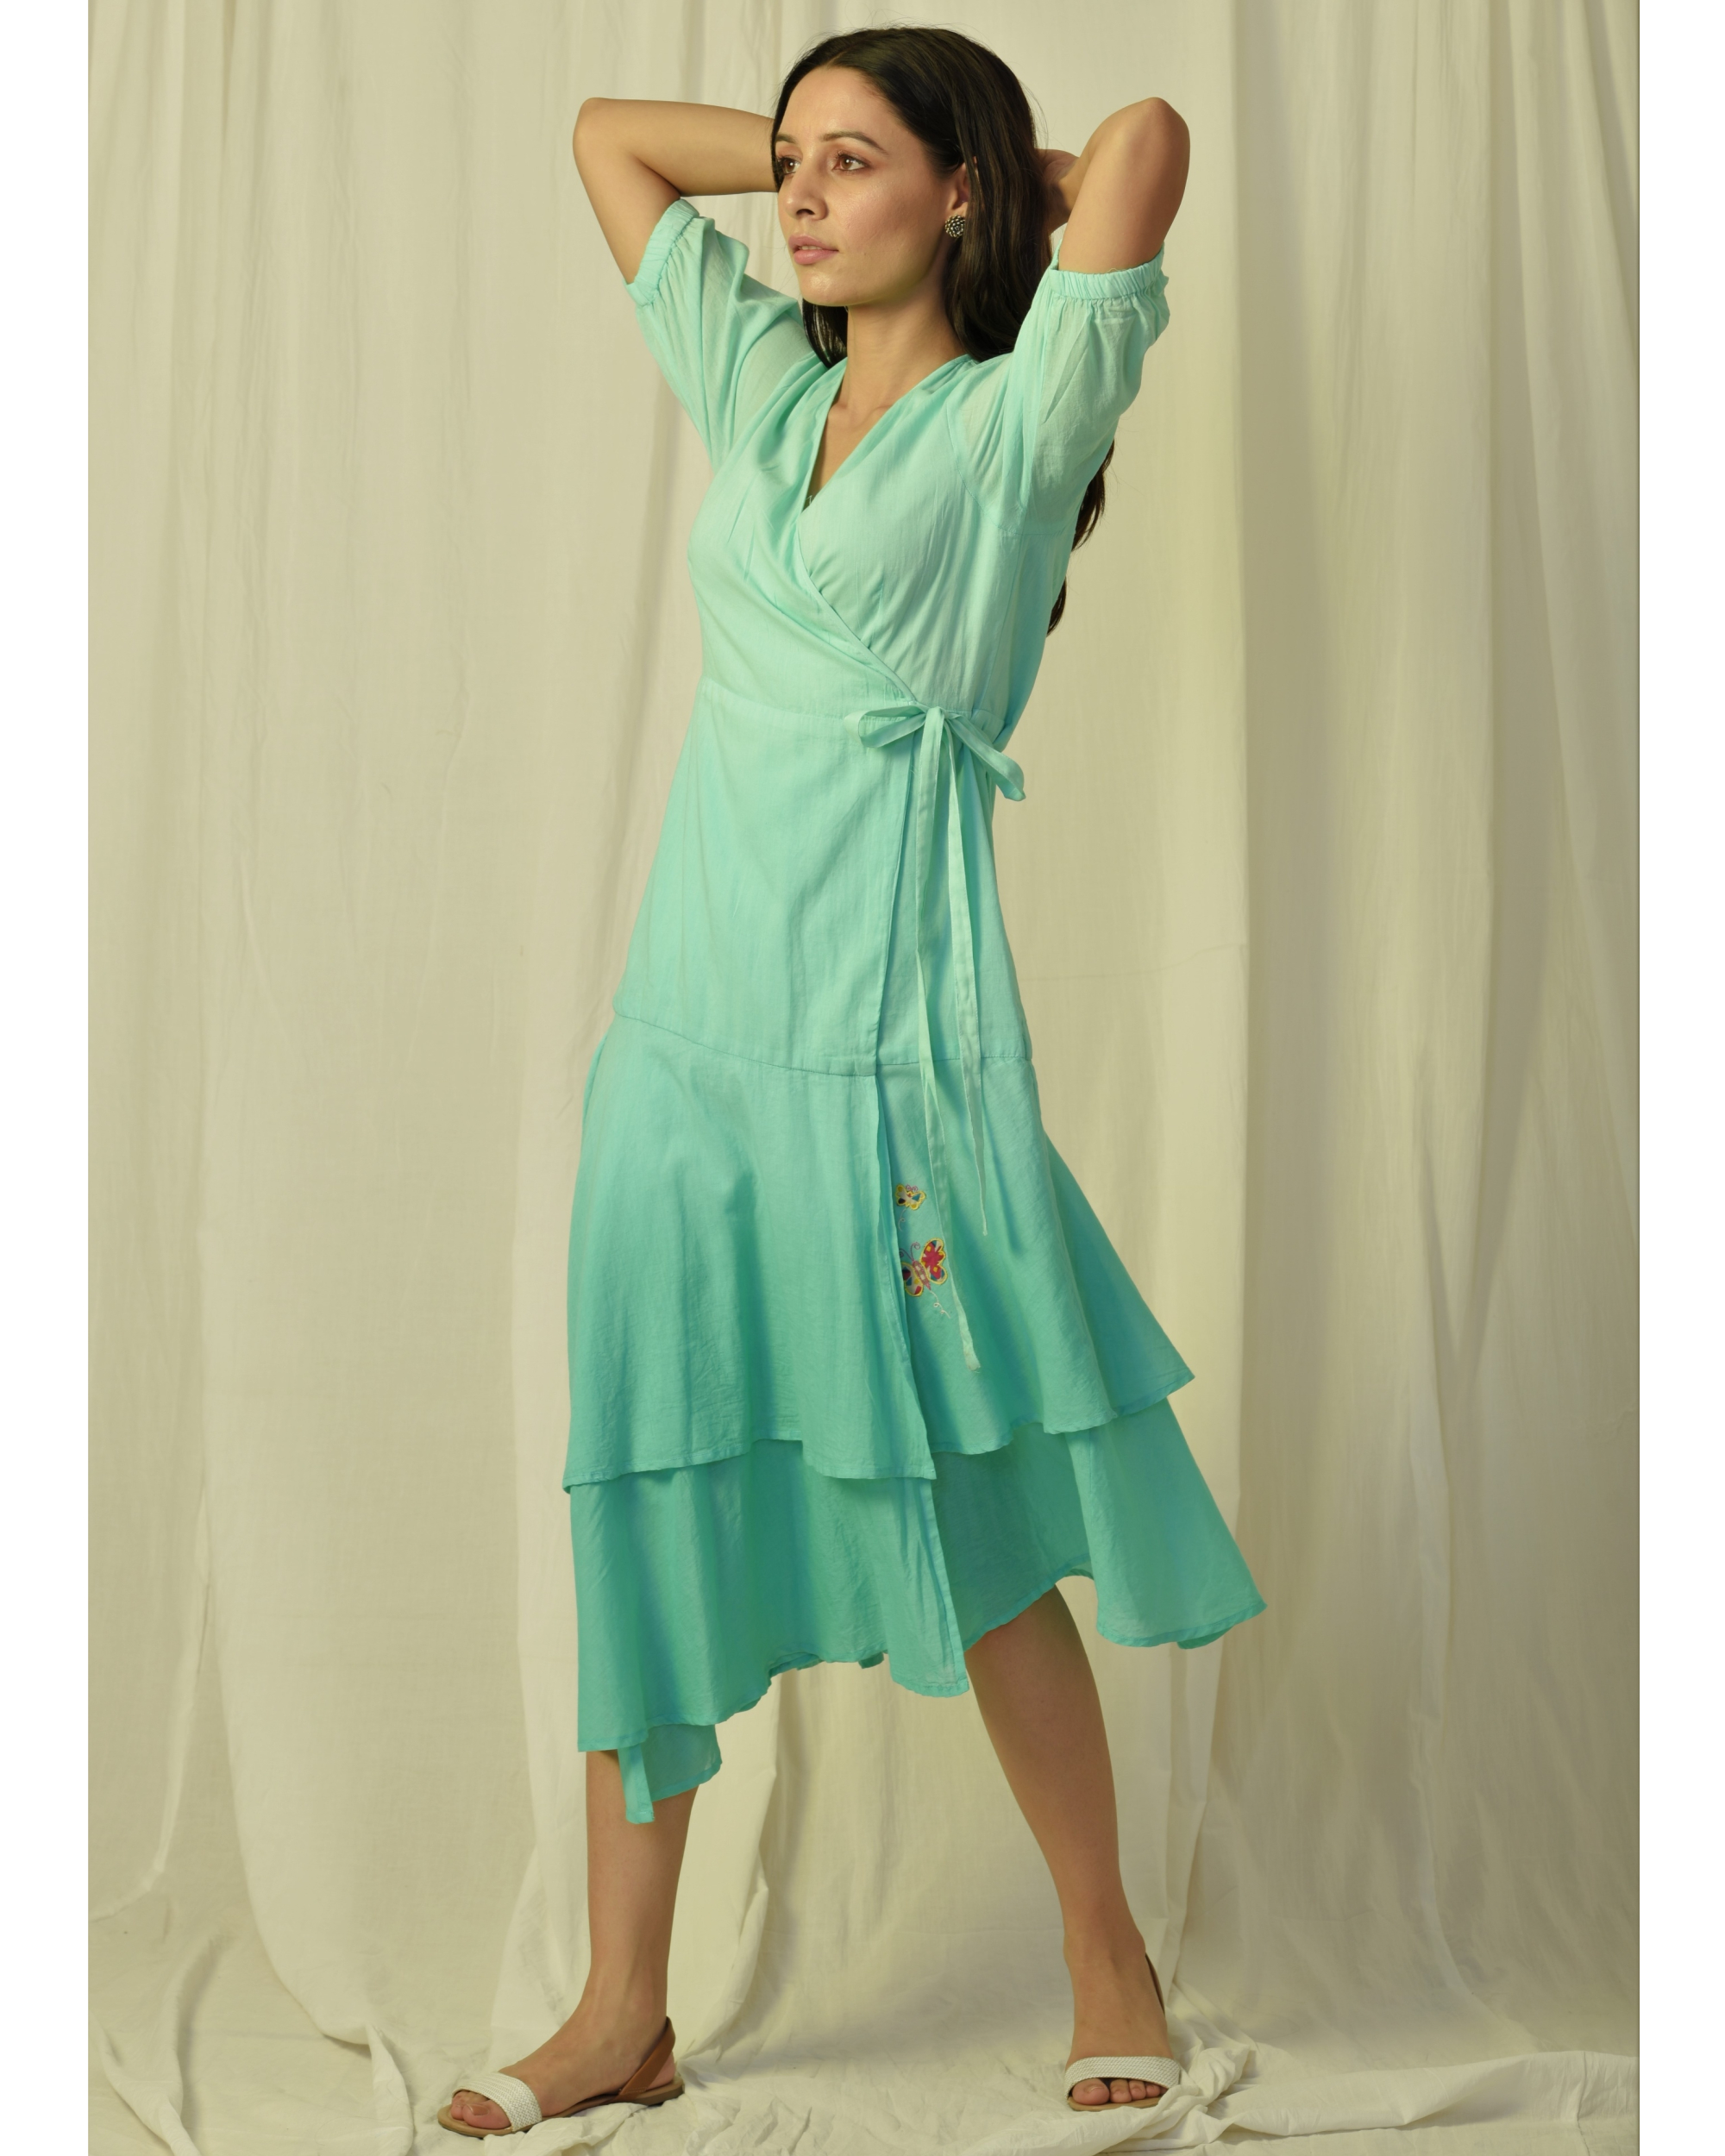 Turquoise wrap dress by Charkhee Women | The Secret Label